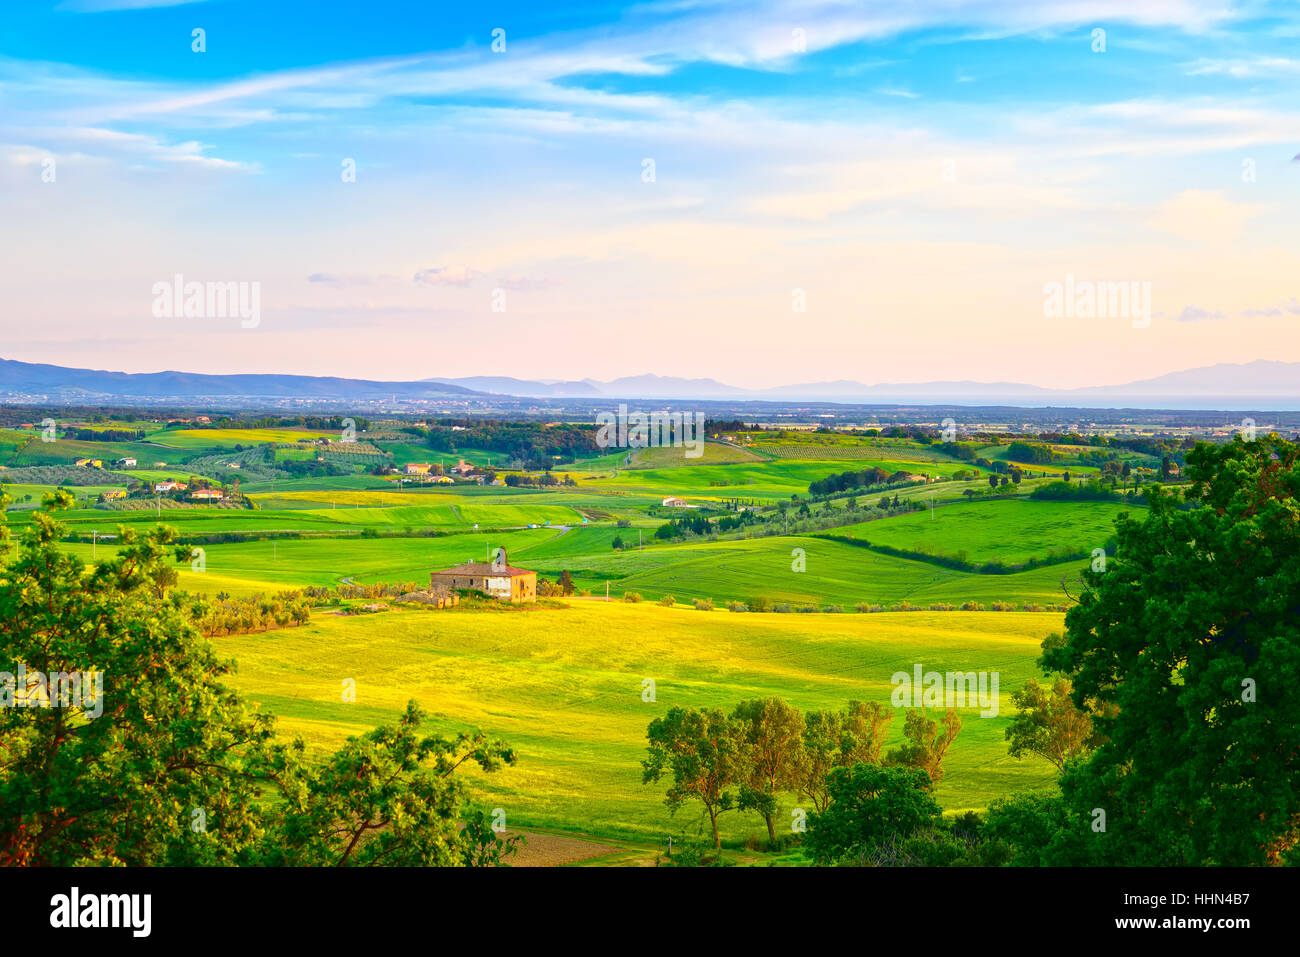 La Maremma, atardecer paisaje rural. Campo granja y campos verdes. La isla de Elba en el horizonte. Toscana, Italia, Europa. Foto de stock